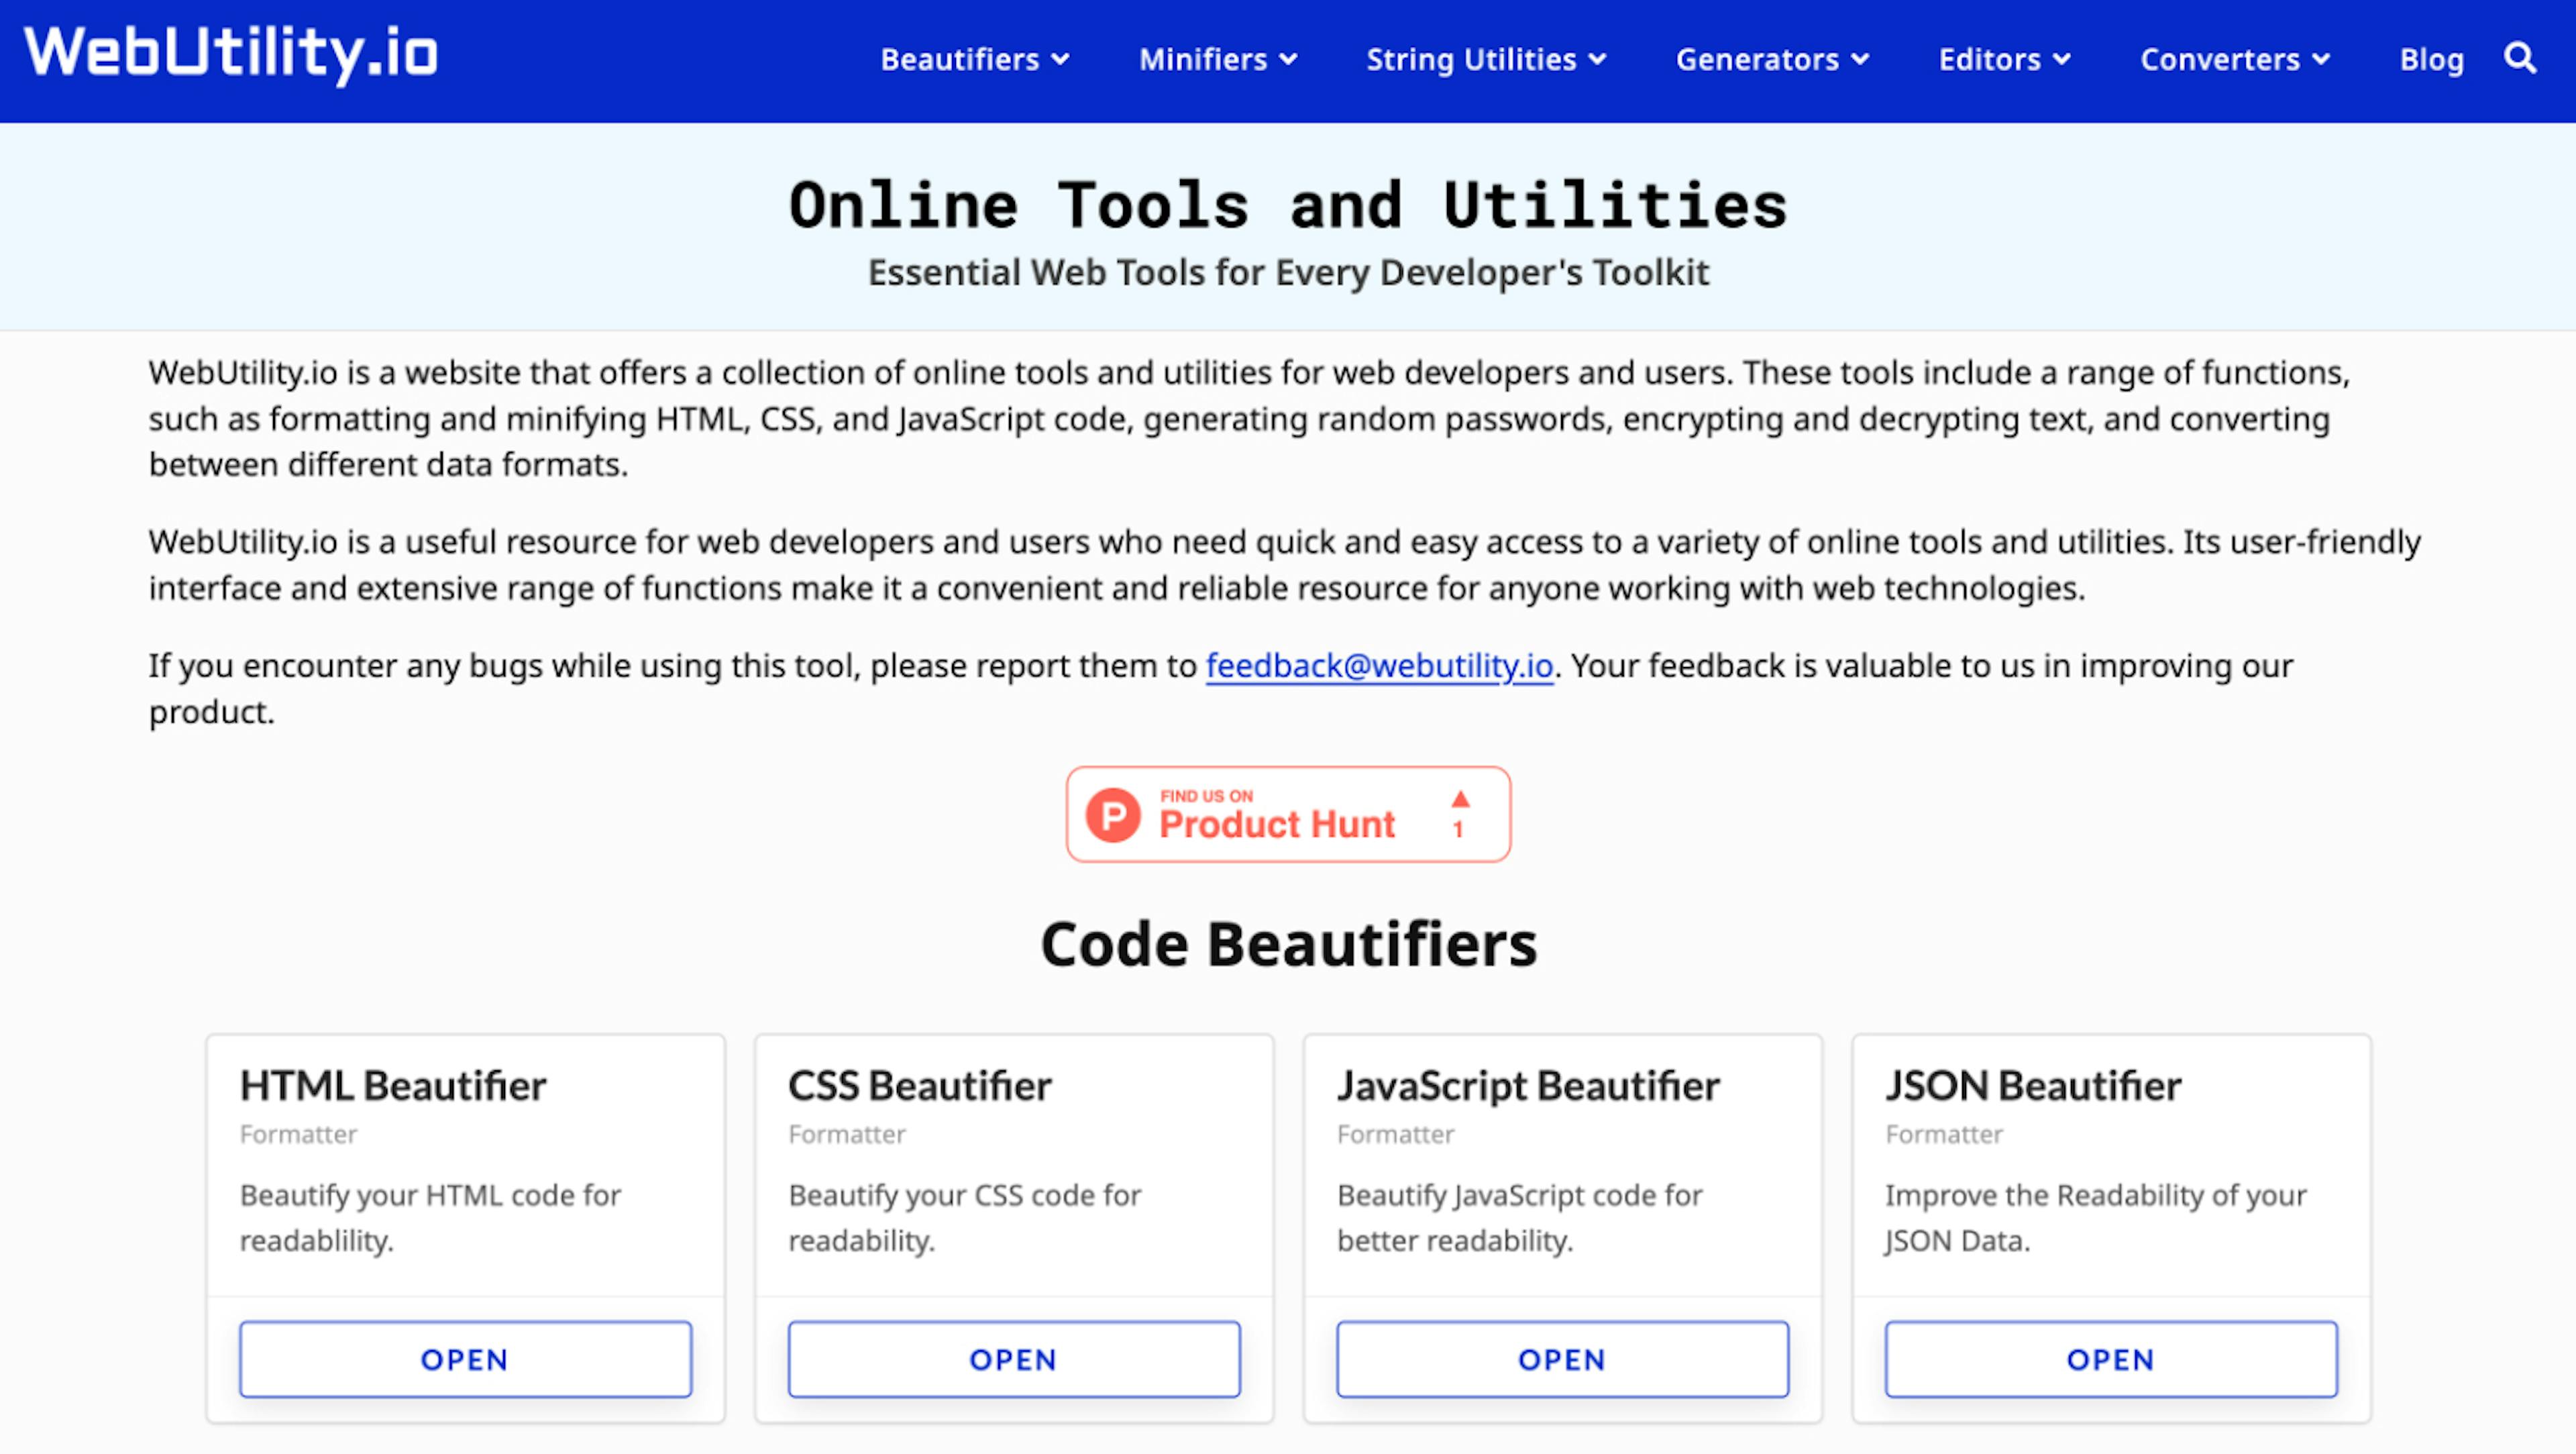 featured image - Steigern Sie Ihren Workflow mit über 50 Online-Tools auf WebUtility.io